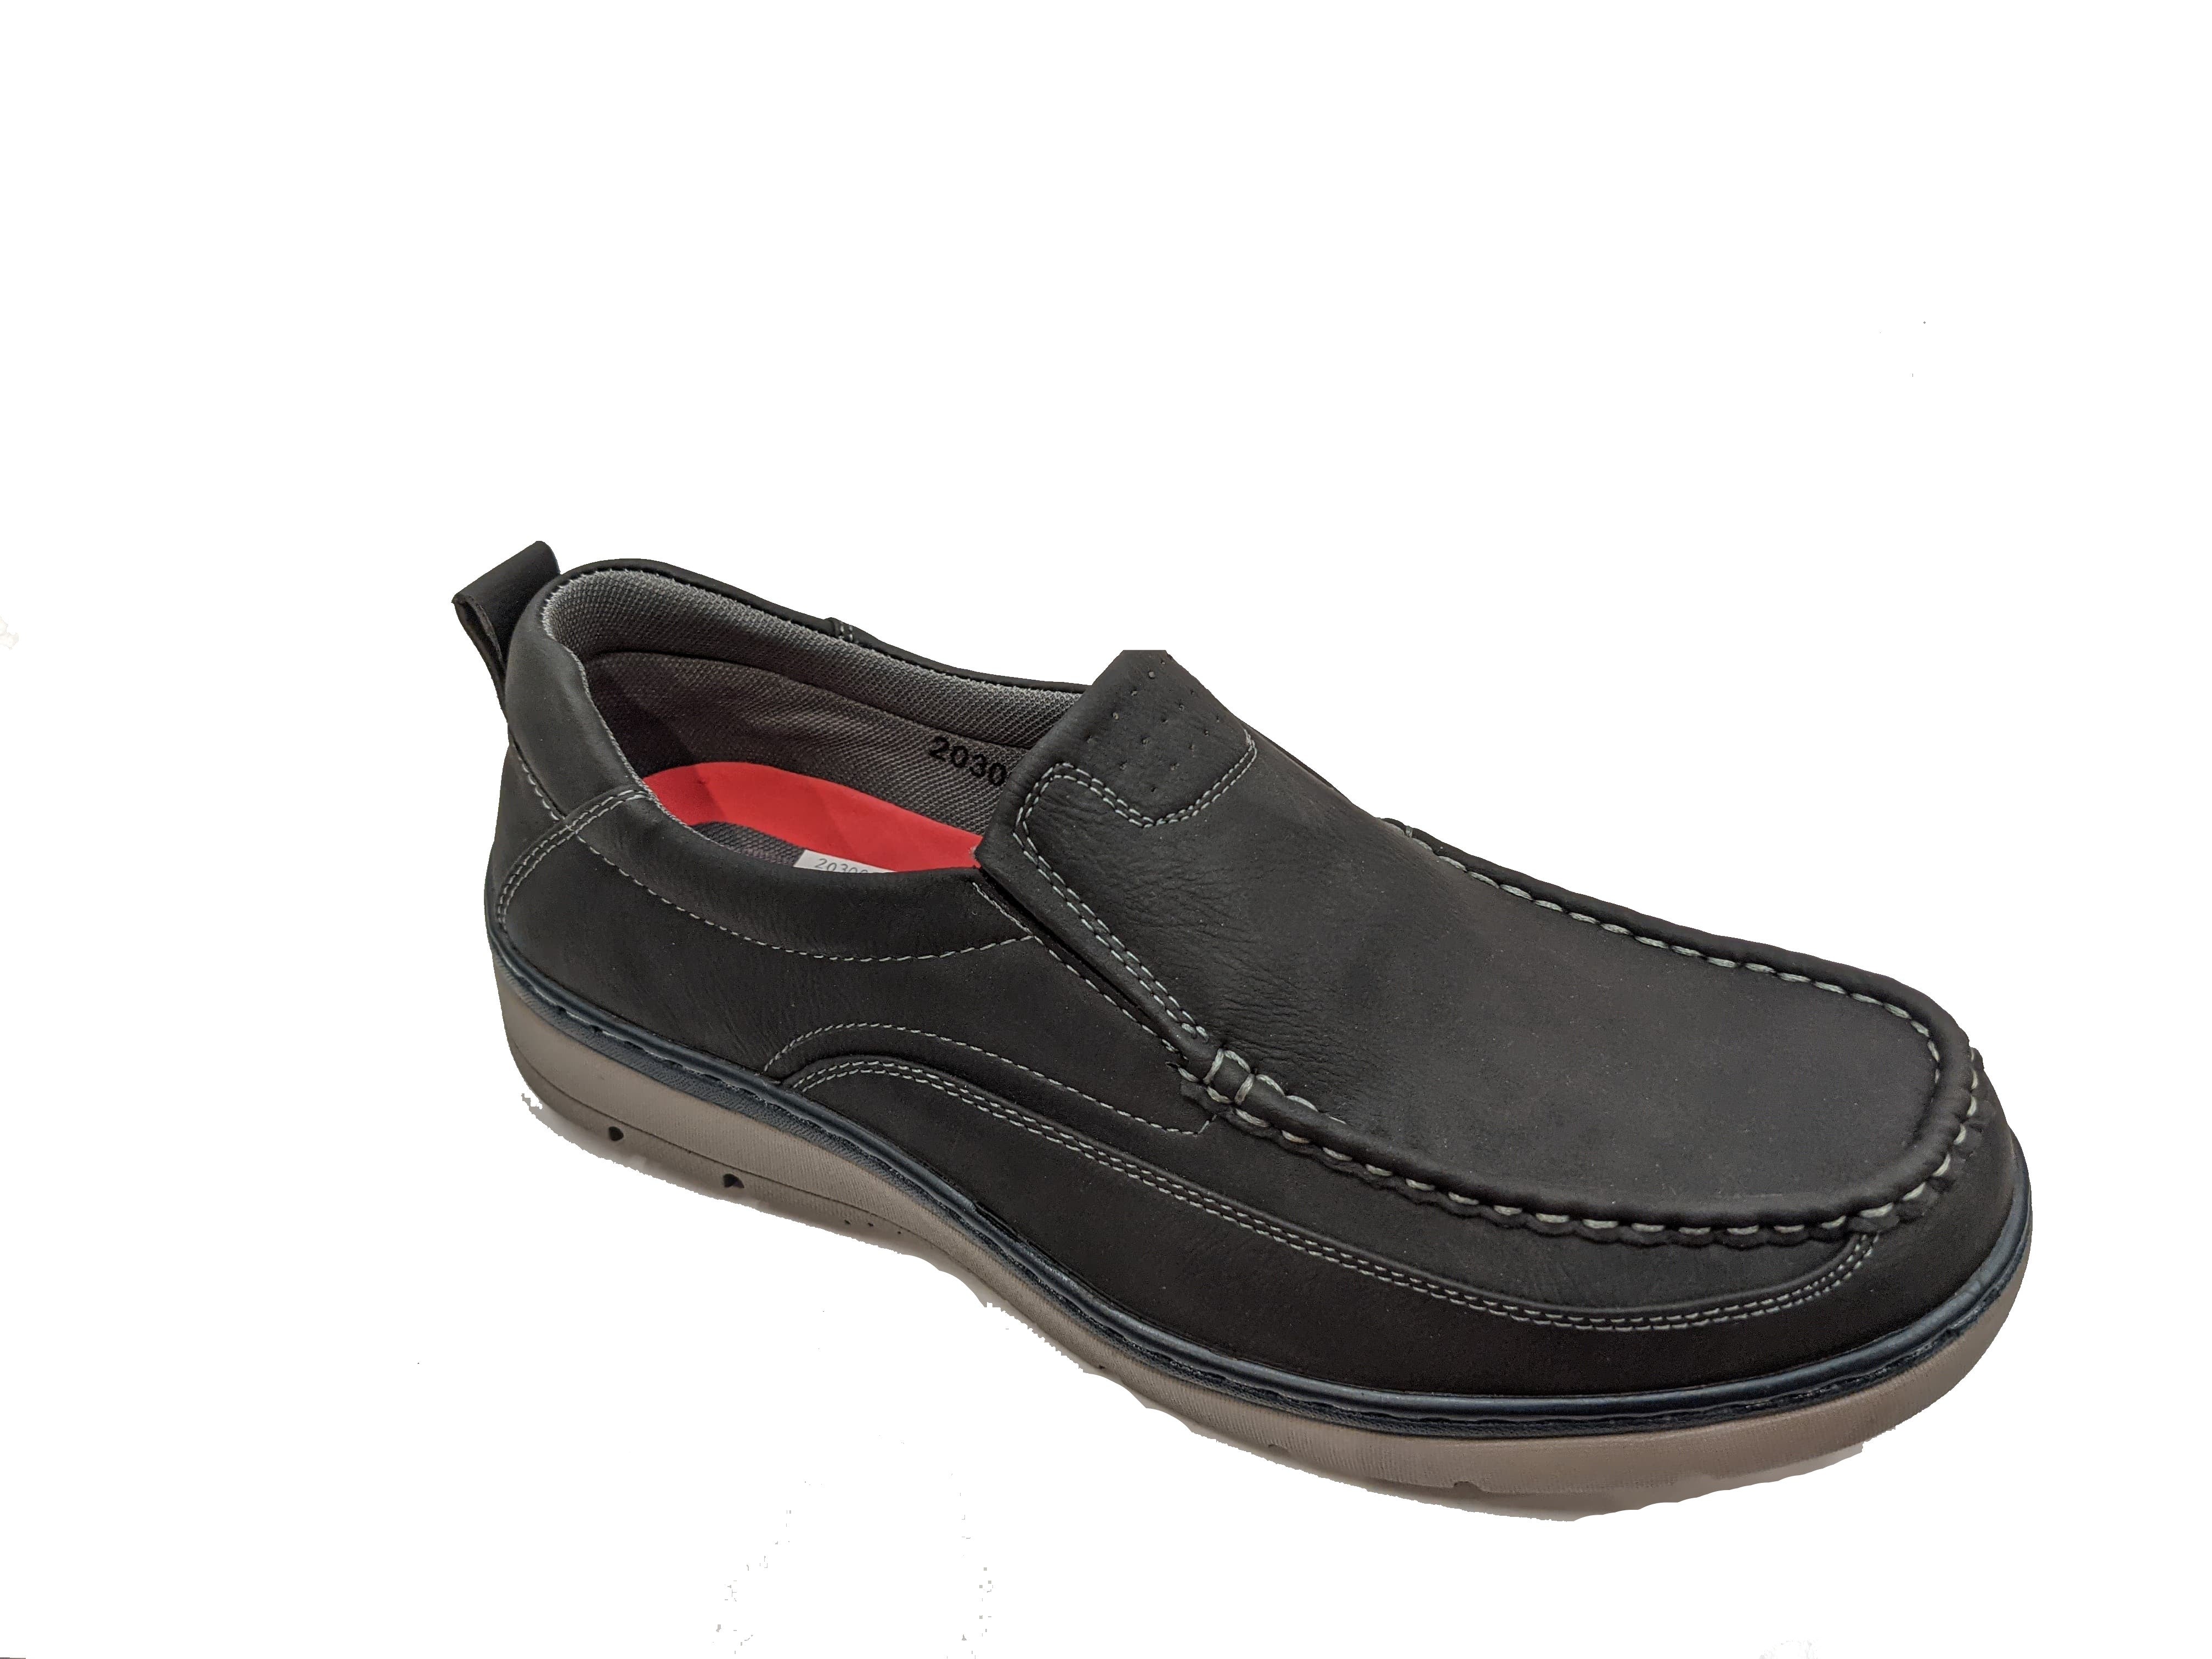 Gardella 3003 NR – Chaussures Monette